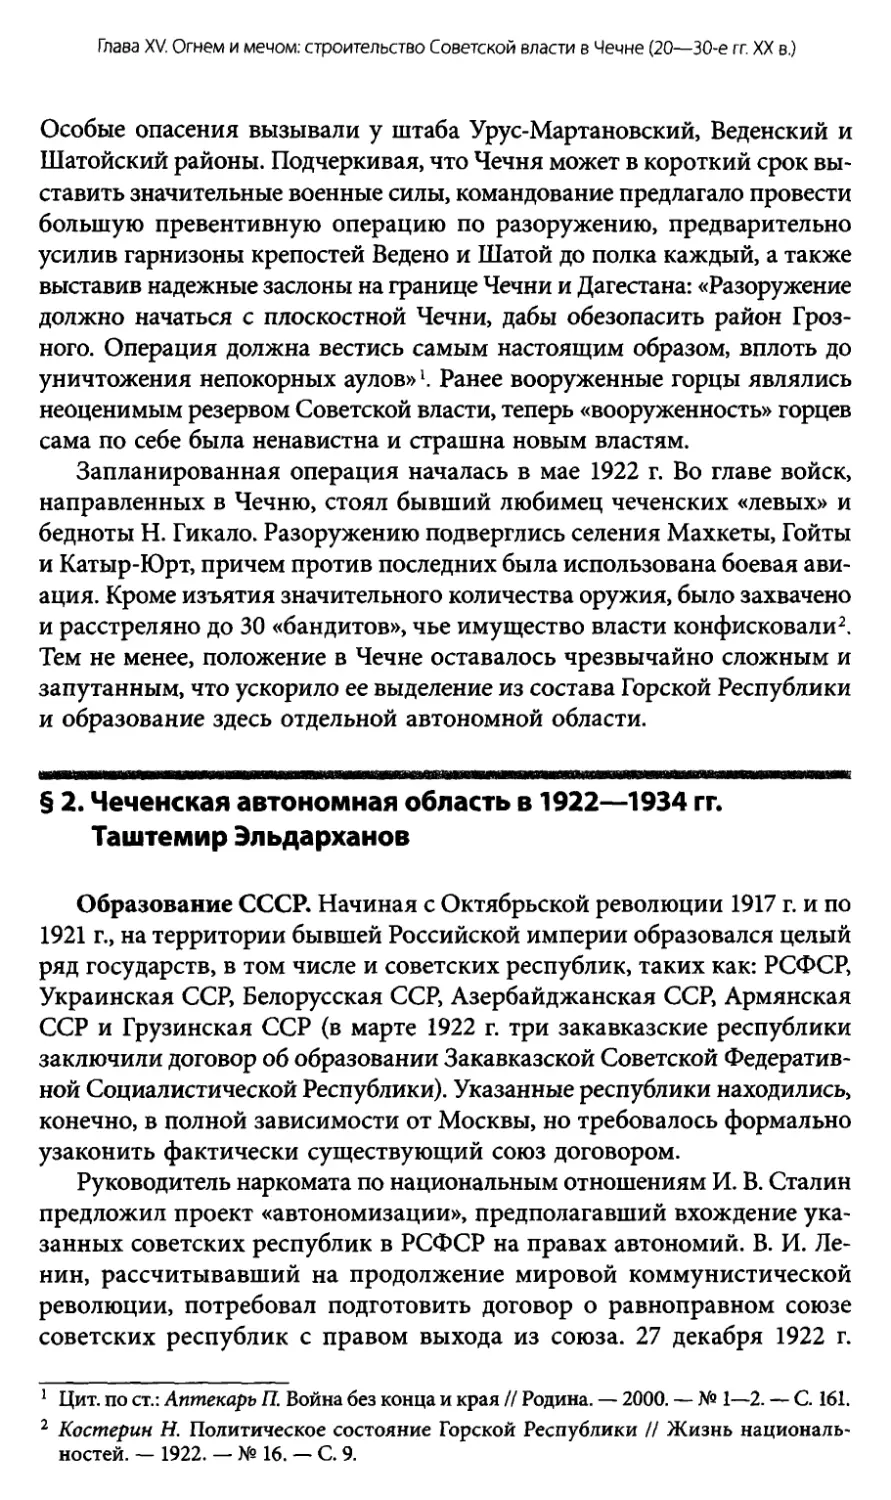 § 2. Чеченская автономная область в 1922—1934 гг. Таштемир Эльдарханов